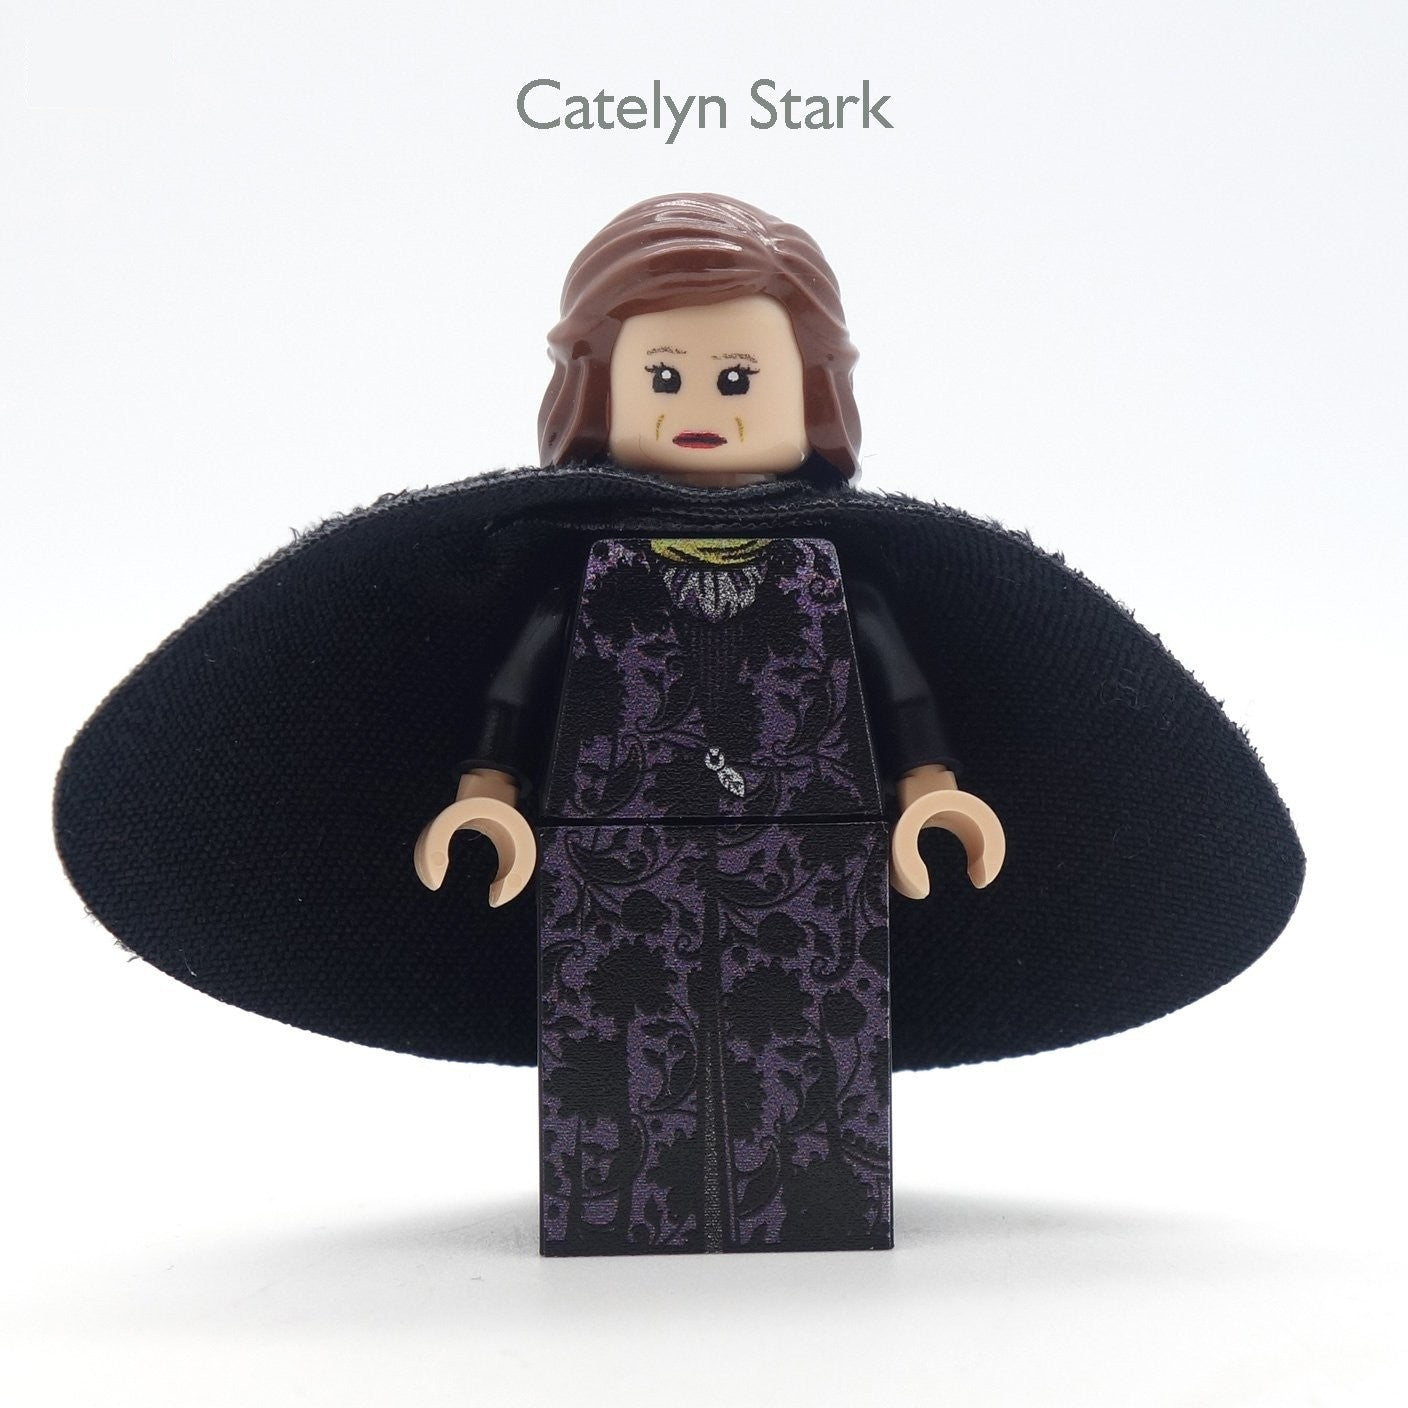 LEGO Catelyn Stark (game of thrones) - Custom Design Minifigure